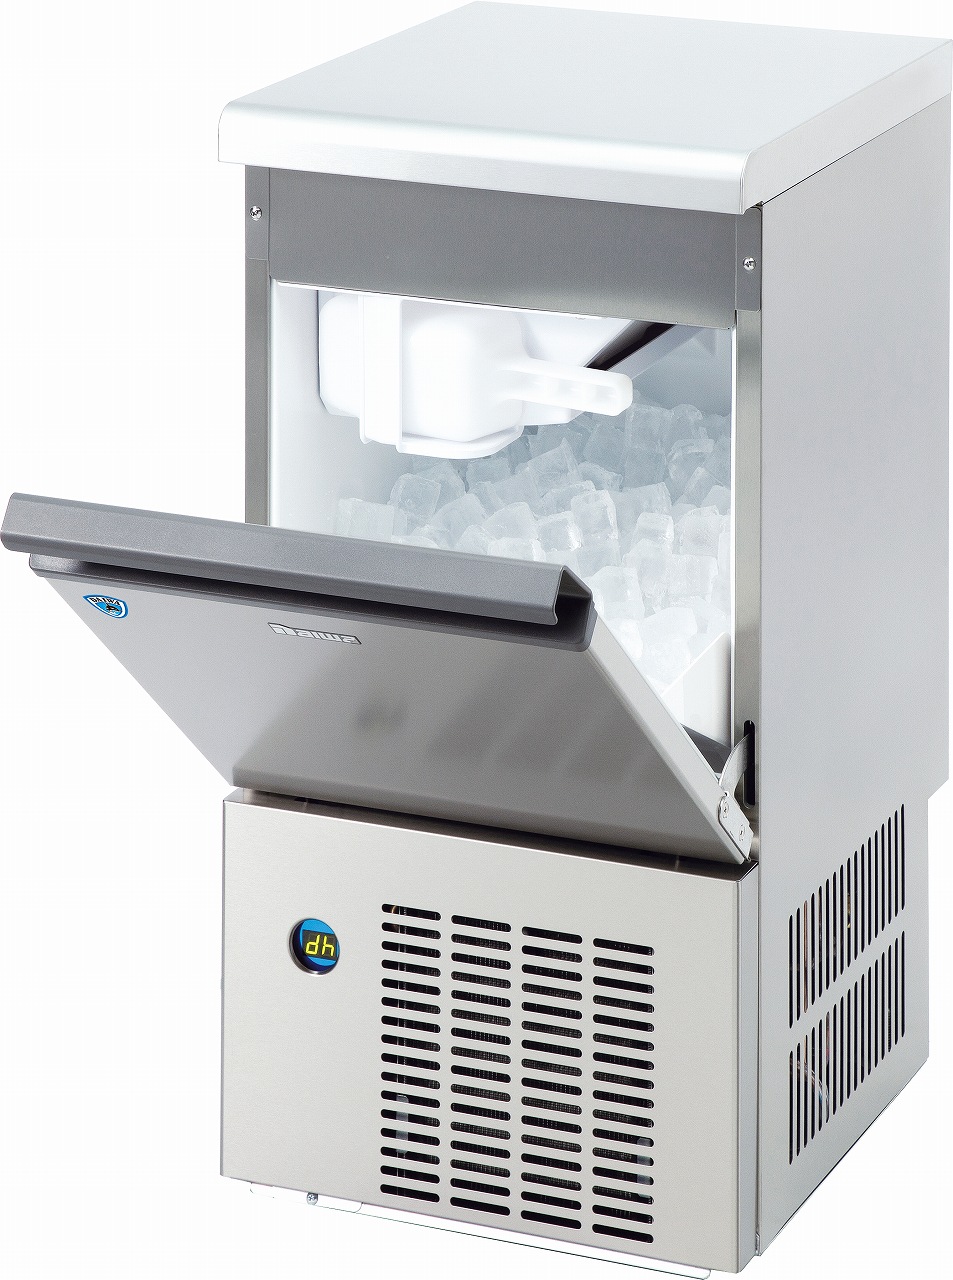 バーチカルタイプ製氷機 LMEシリーズ | 製氷機 | 製品情報 | 大和冷機 